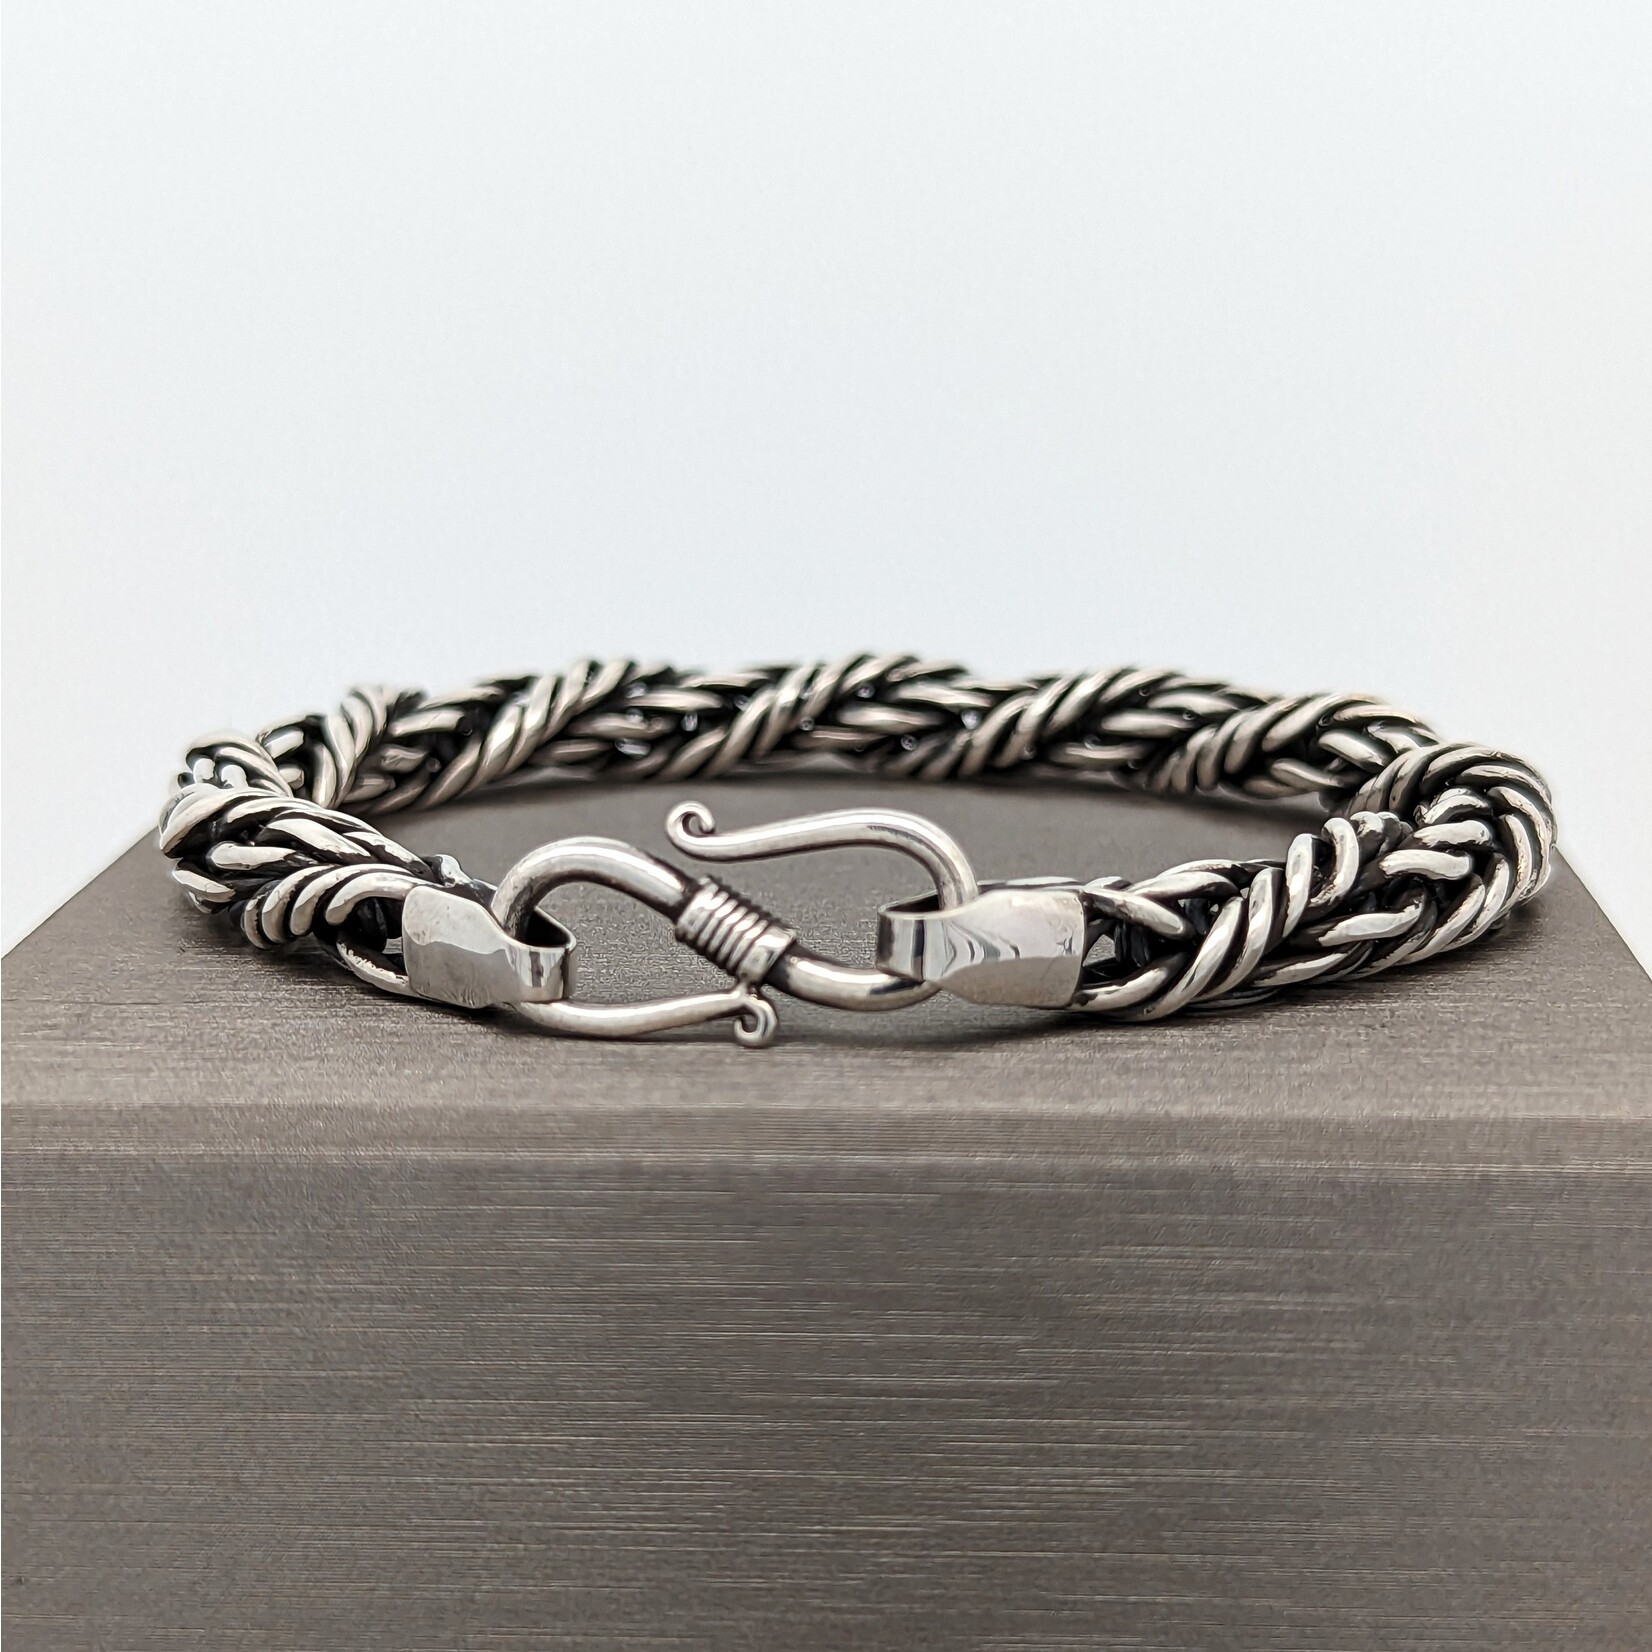 Modern Heirloom® Men's Viking Braid Chain Bracelet - 8.5"